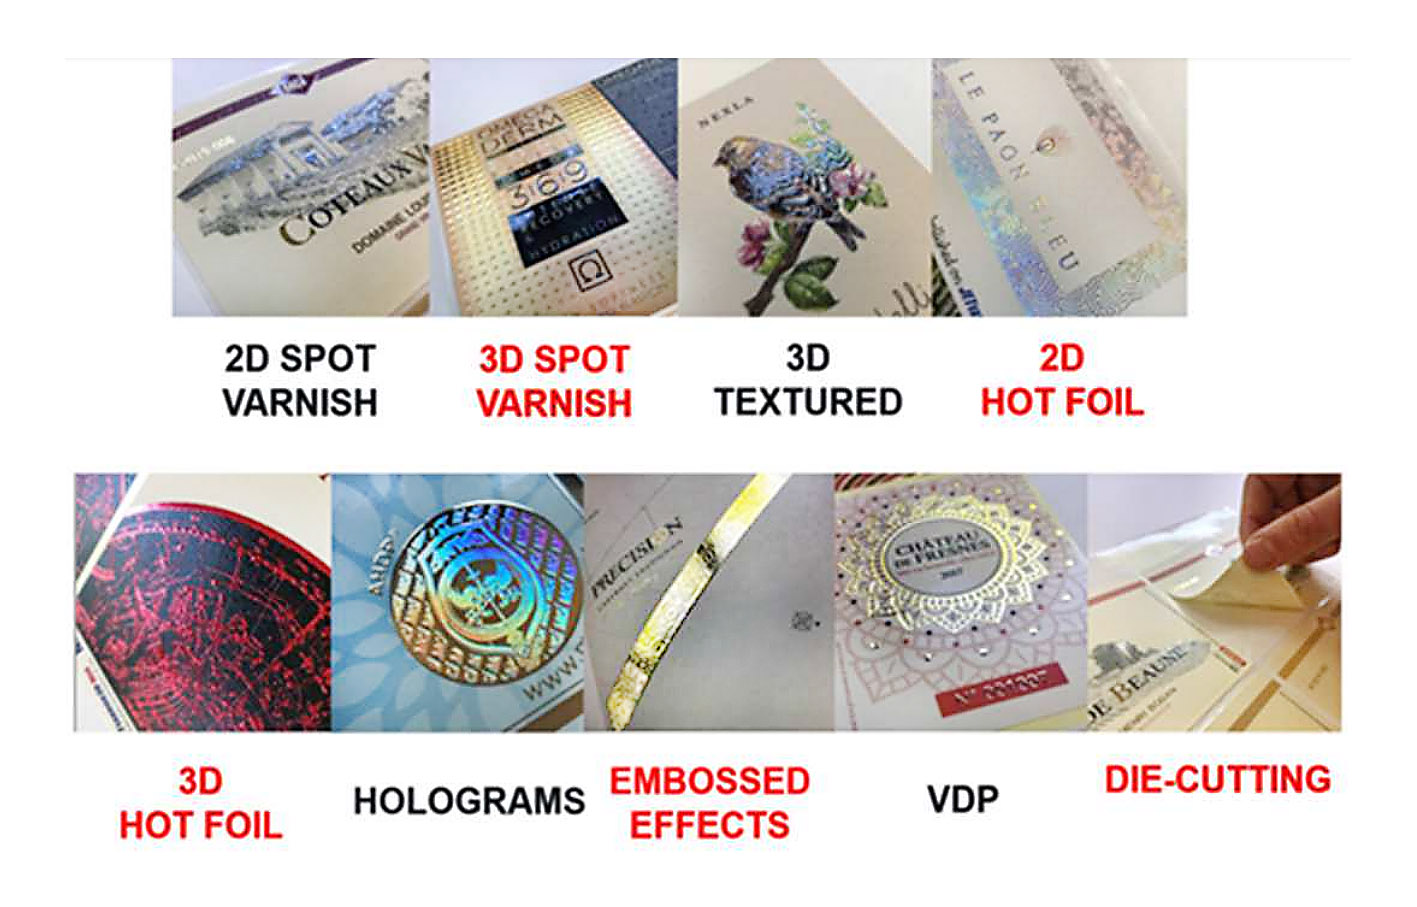 Xeikon FEU - Acabamento e Embelezamento DIGITAL com Verniz Localizado UV e Tátil, Foil (dourado, prata...), Texturas 3D e Hologramas